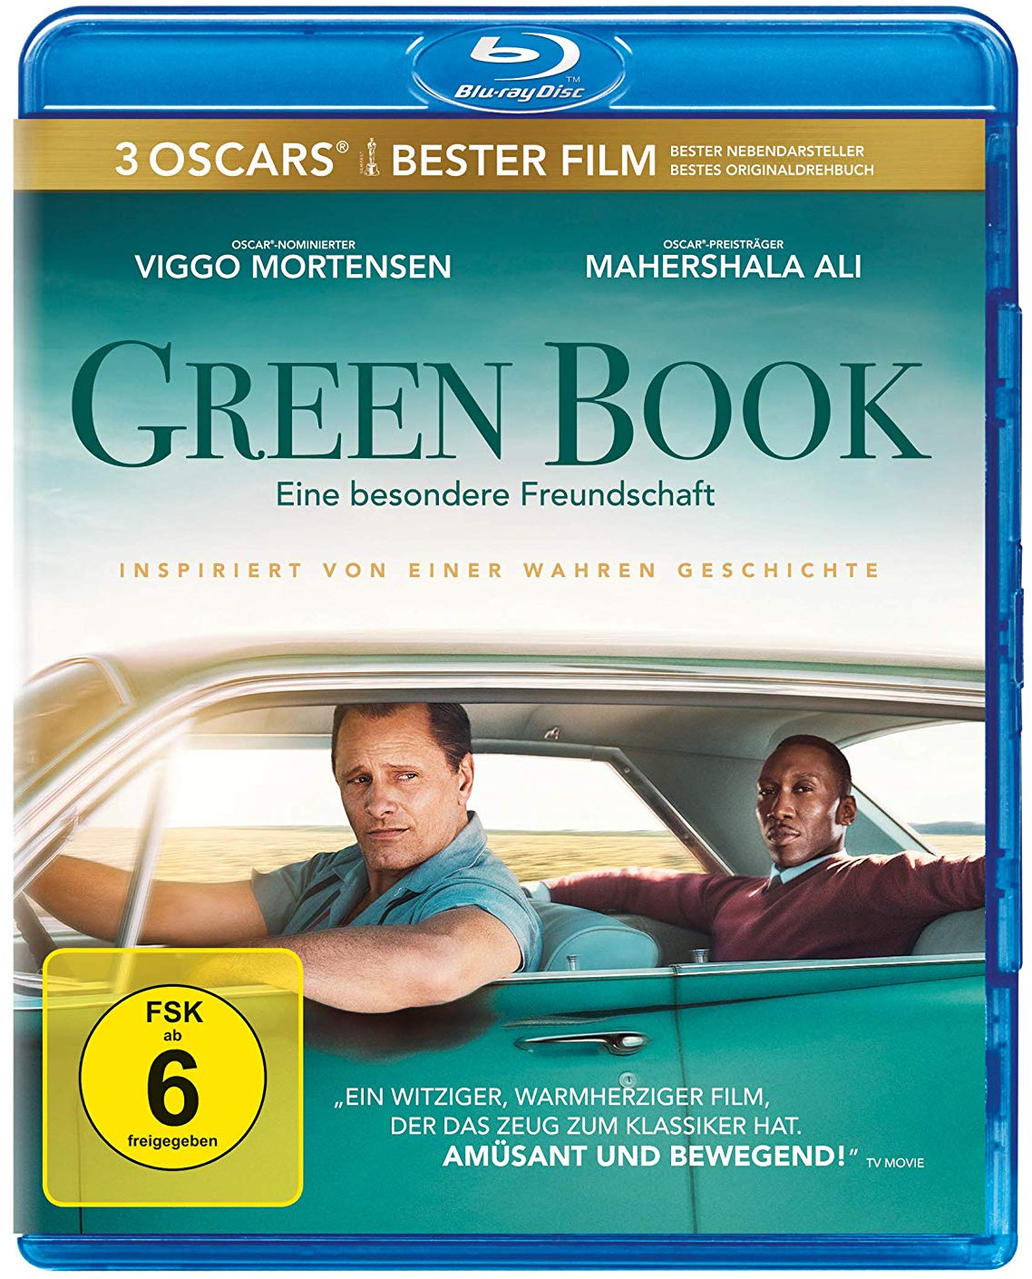 Green Book - Blu-ray besondere Freundschaft Eine